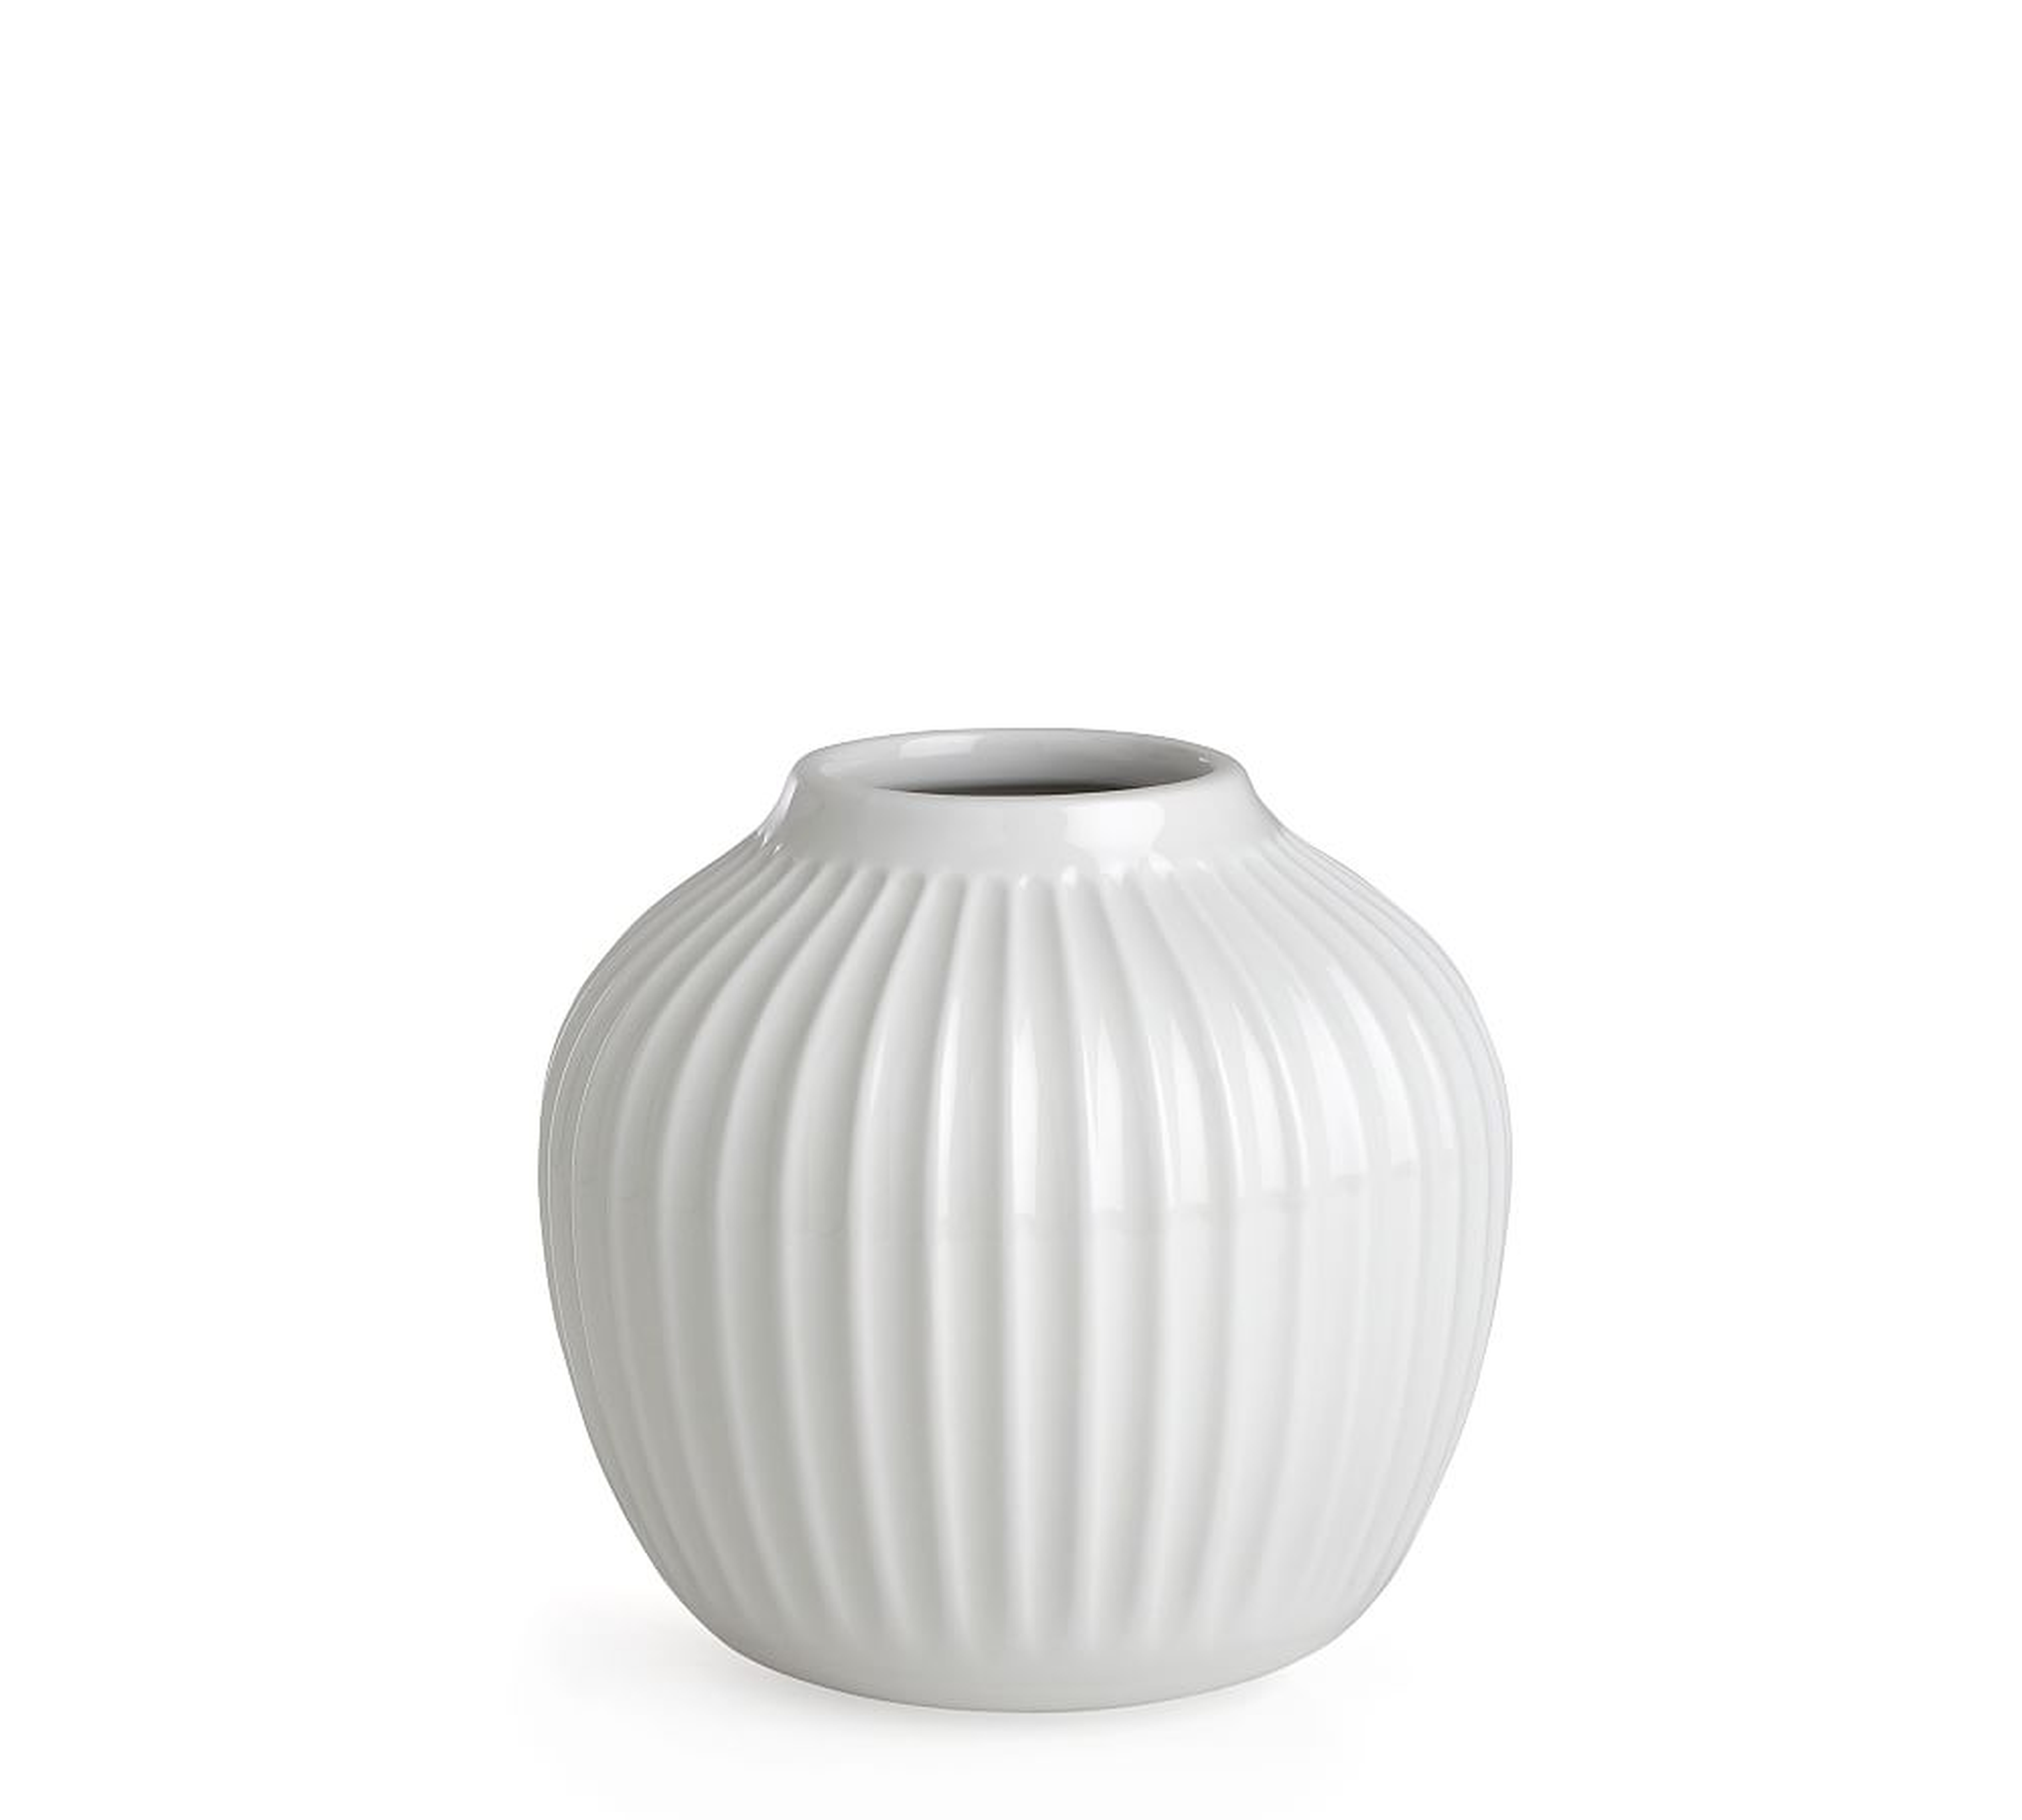 Kahler Hammershoi Vase, Extra Small, White Porcelain - Pottery Barn